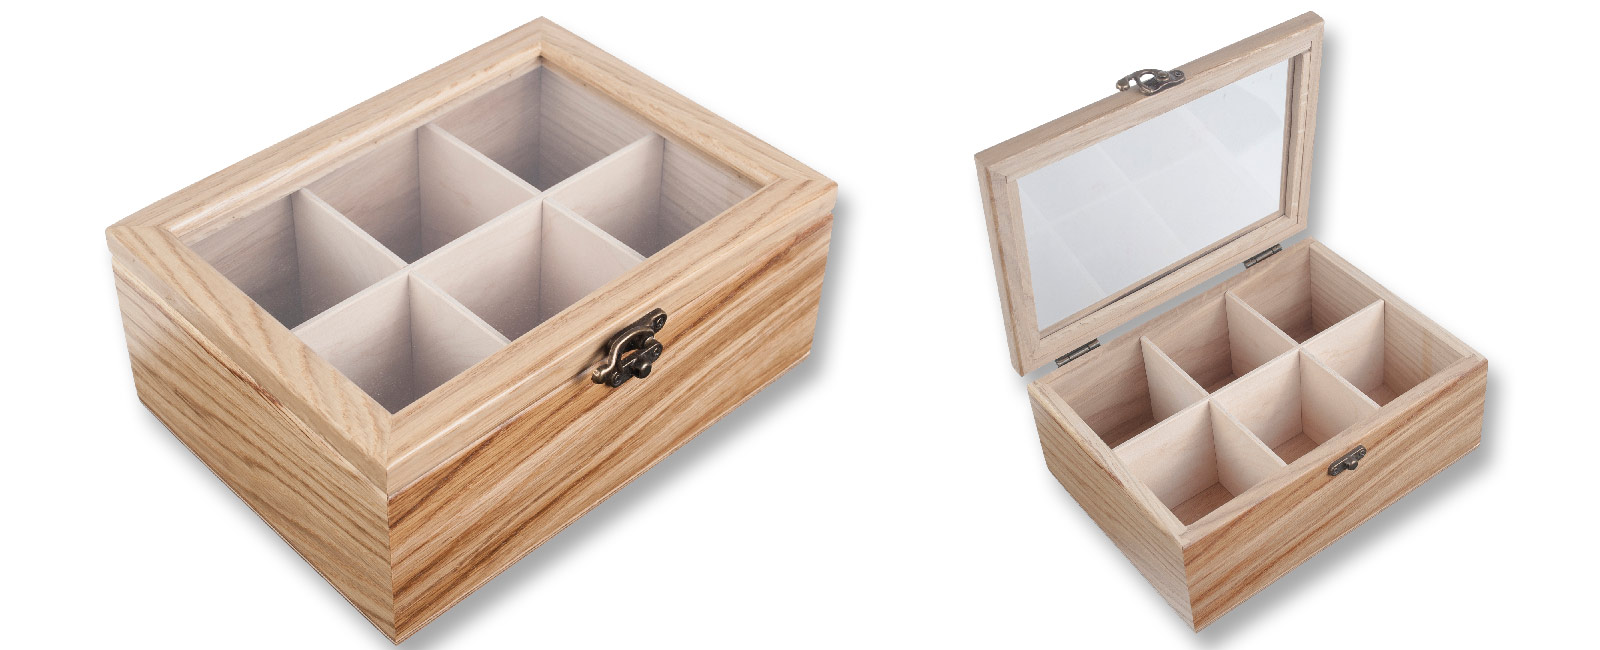 Teekiste, Holzkasten für Teebeutel - Aufbewahrungsbox 6 Fächer aus Eichenholz Teebox Teebeutel-Box Holz